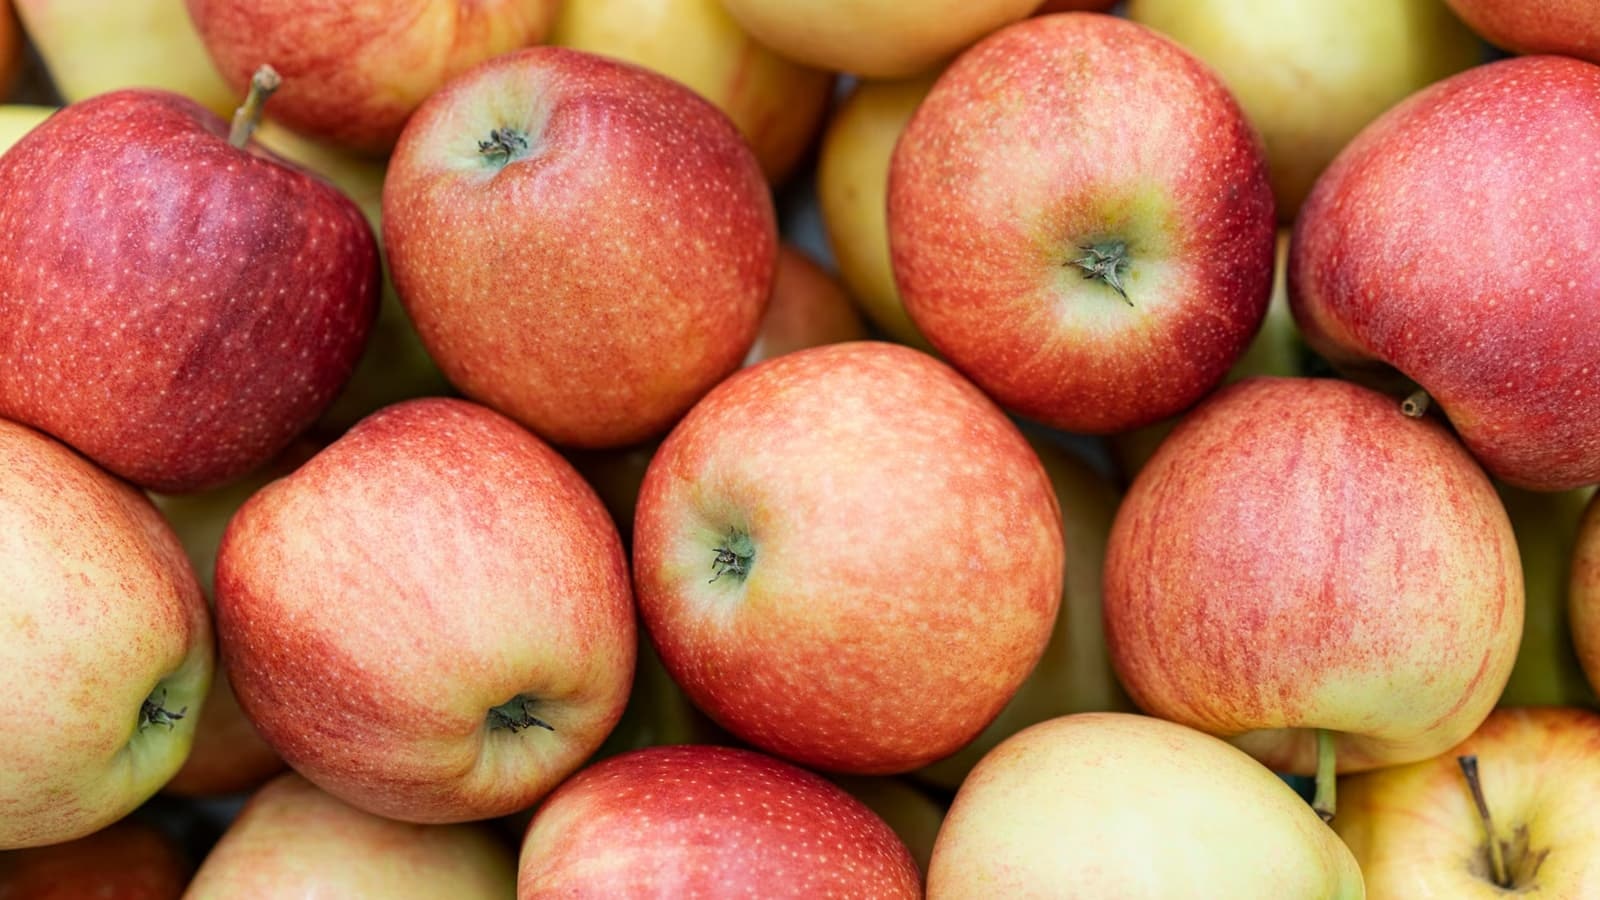 Wie gesund sind Äpfel? Bild, auf dem mehrere Äpfel zu sehen sind, welche sehr gesund sind.